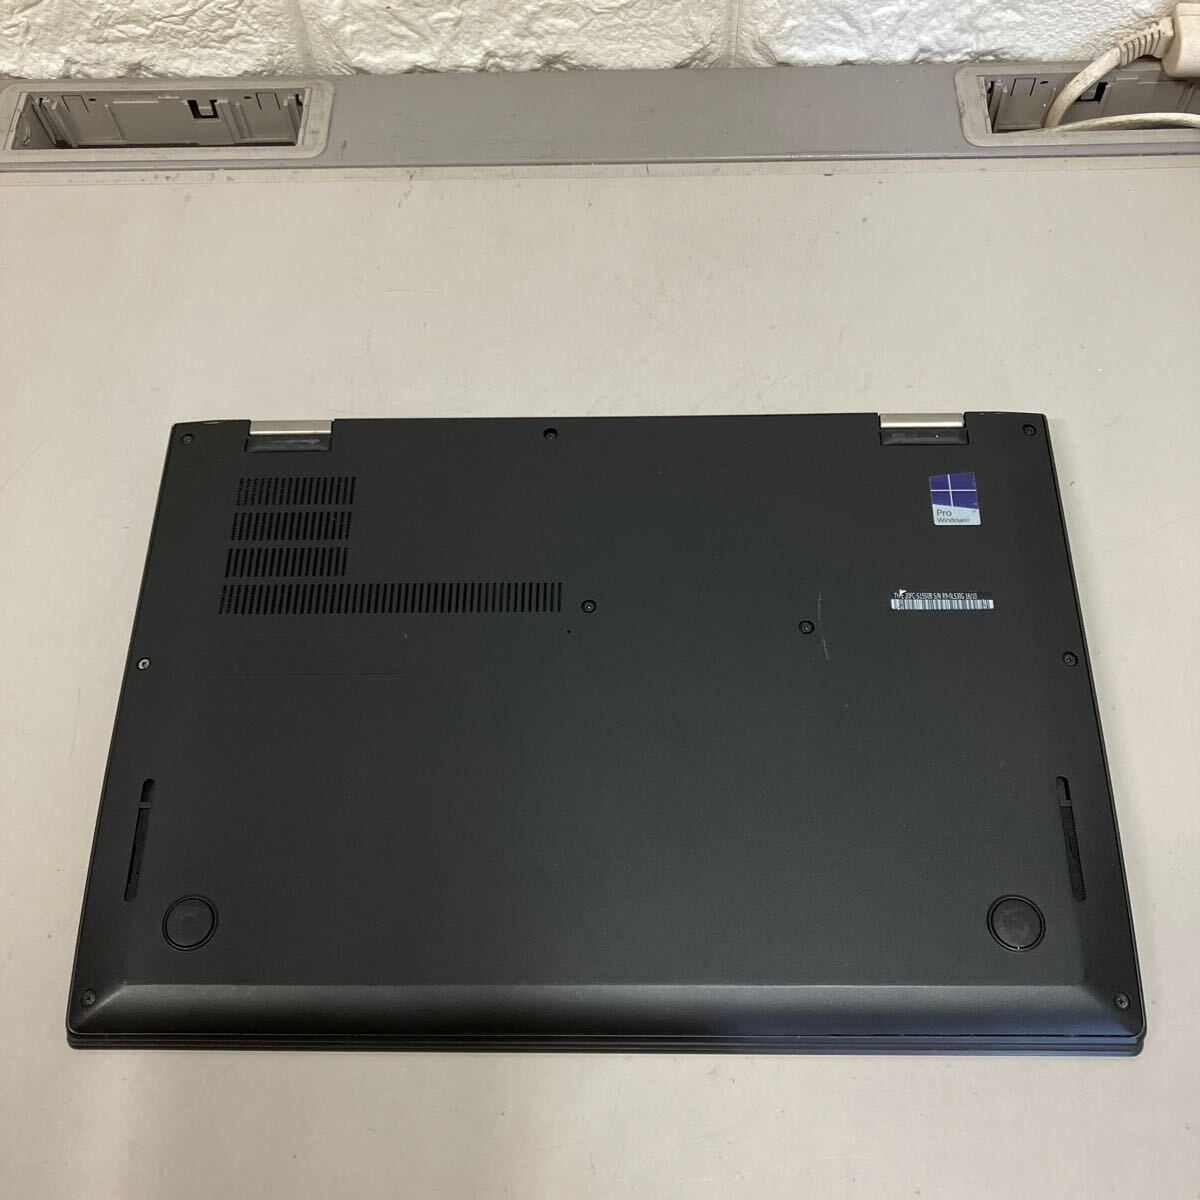 M183 Lenovo ThinkPad X1 carbon Core i7 6600U memory 8GB